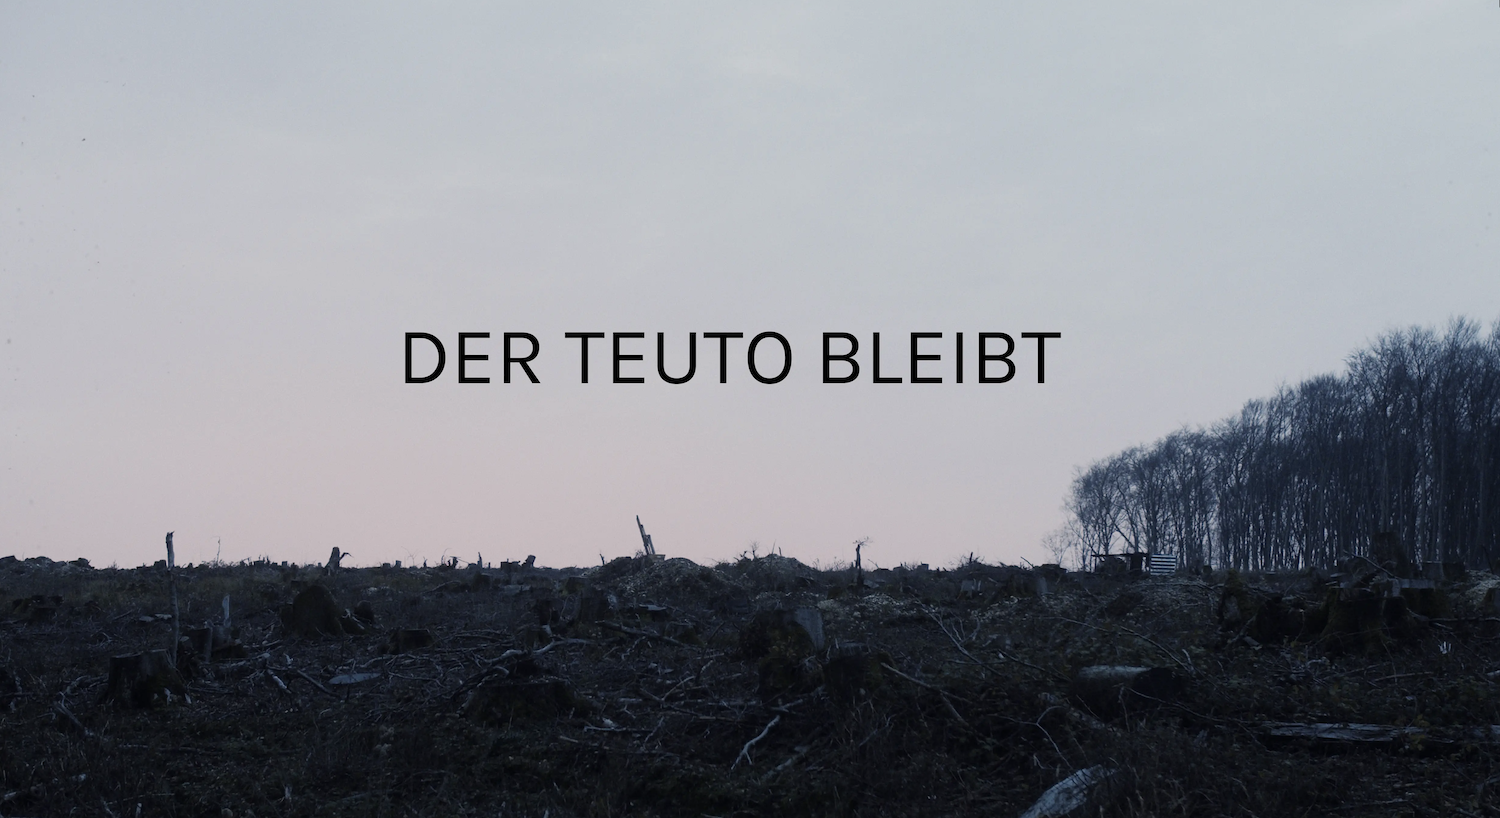 Screenshot vom Film "Der Teuto bleibt"